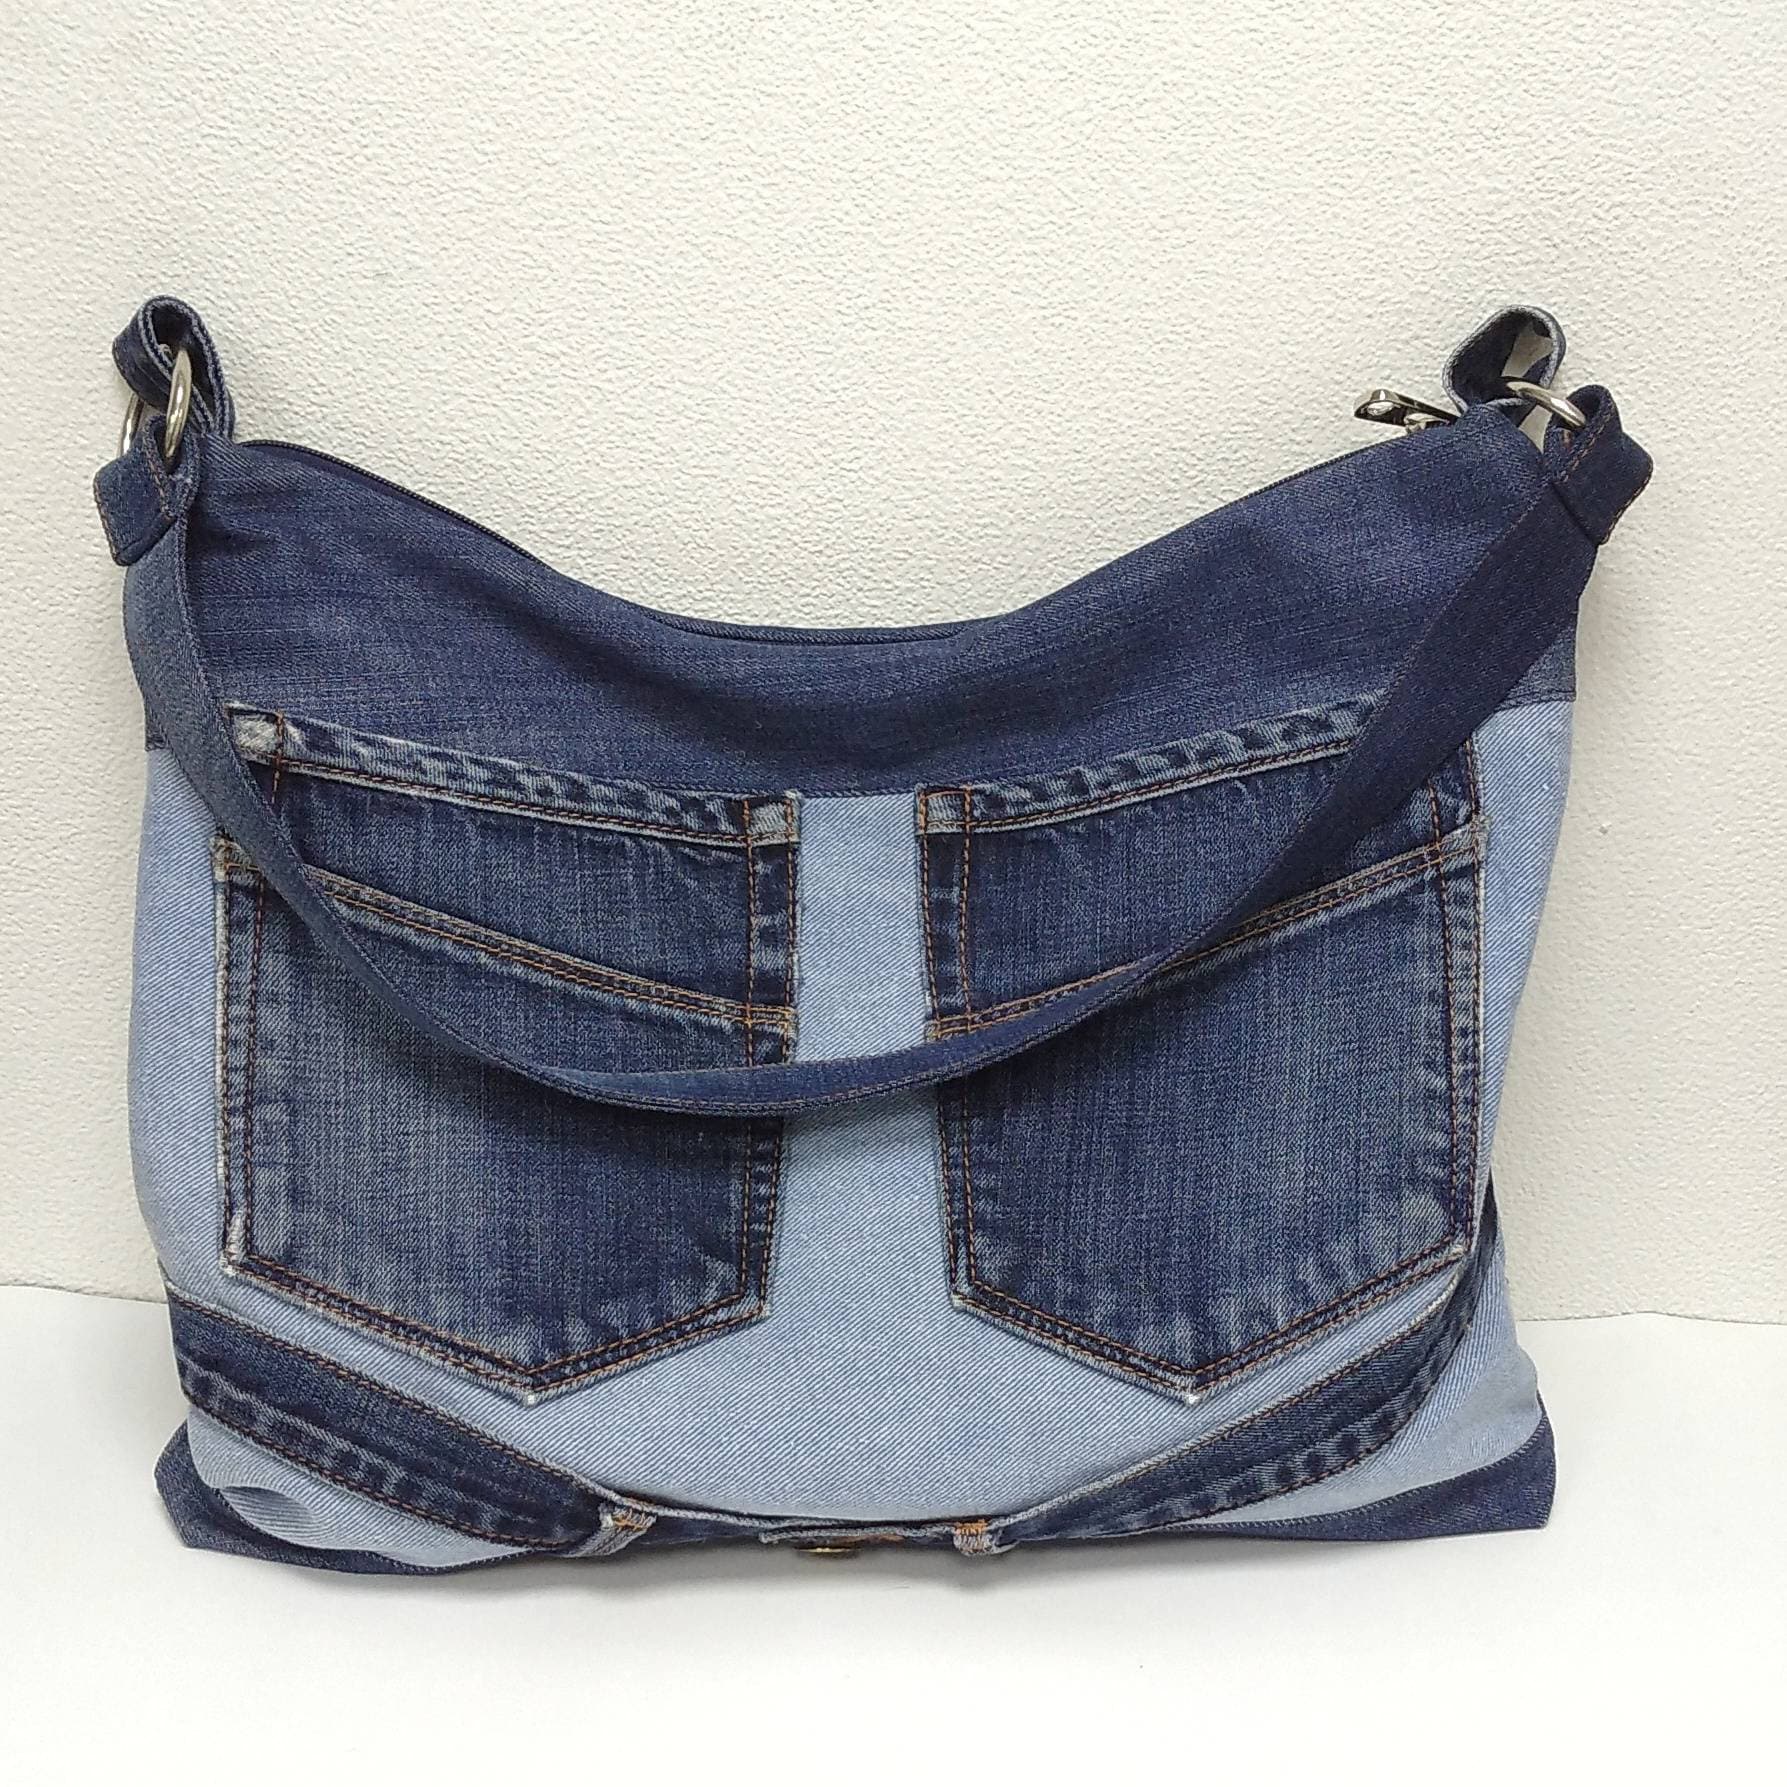 Denim shoulder bag hobo bag Casual shoulder bag of jeans | Etsy